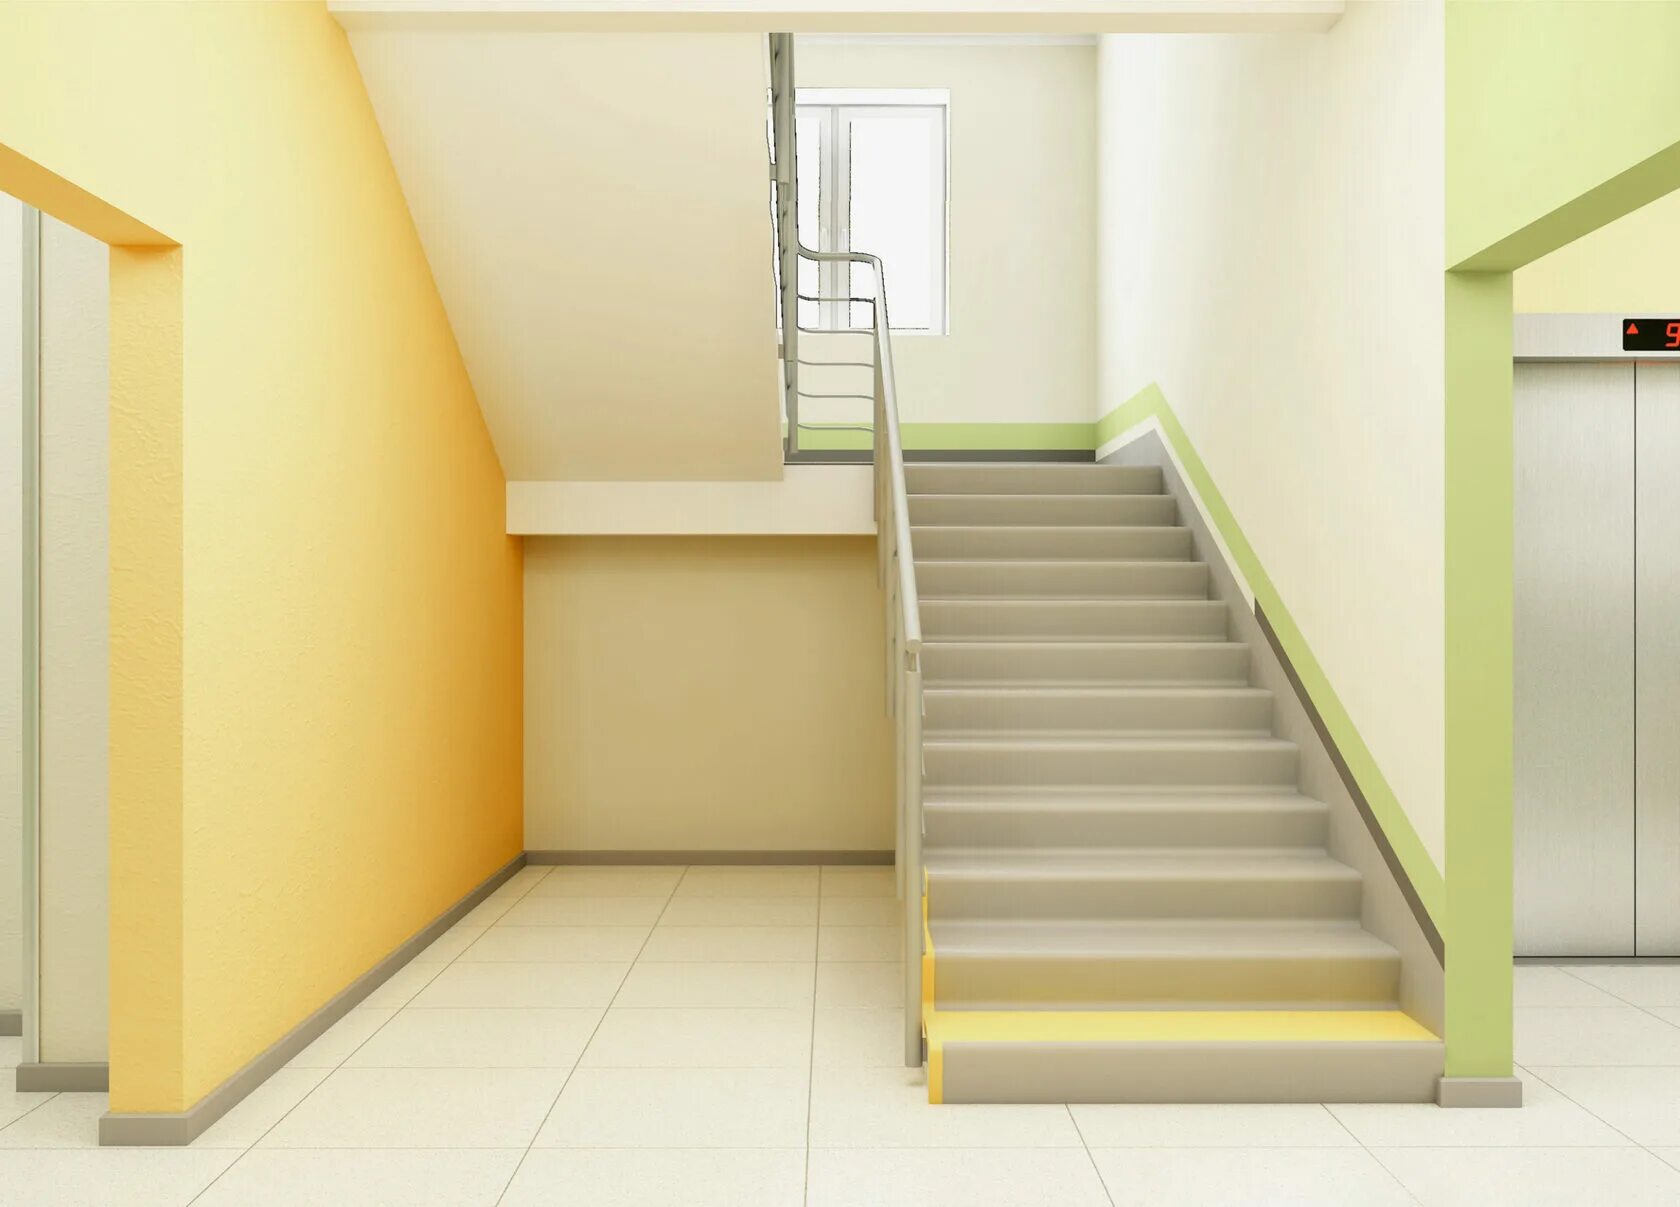 Какой подъезд и какая квартира. Лестница в подъезде. Красивый подъезд. Желтый подъезд. Покраска подъезда.